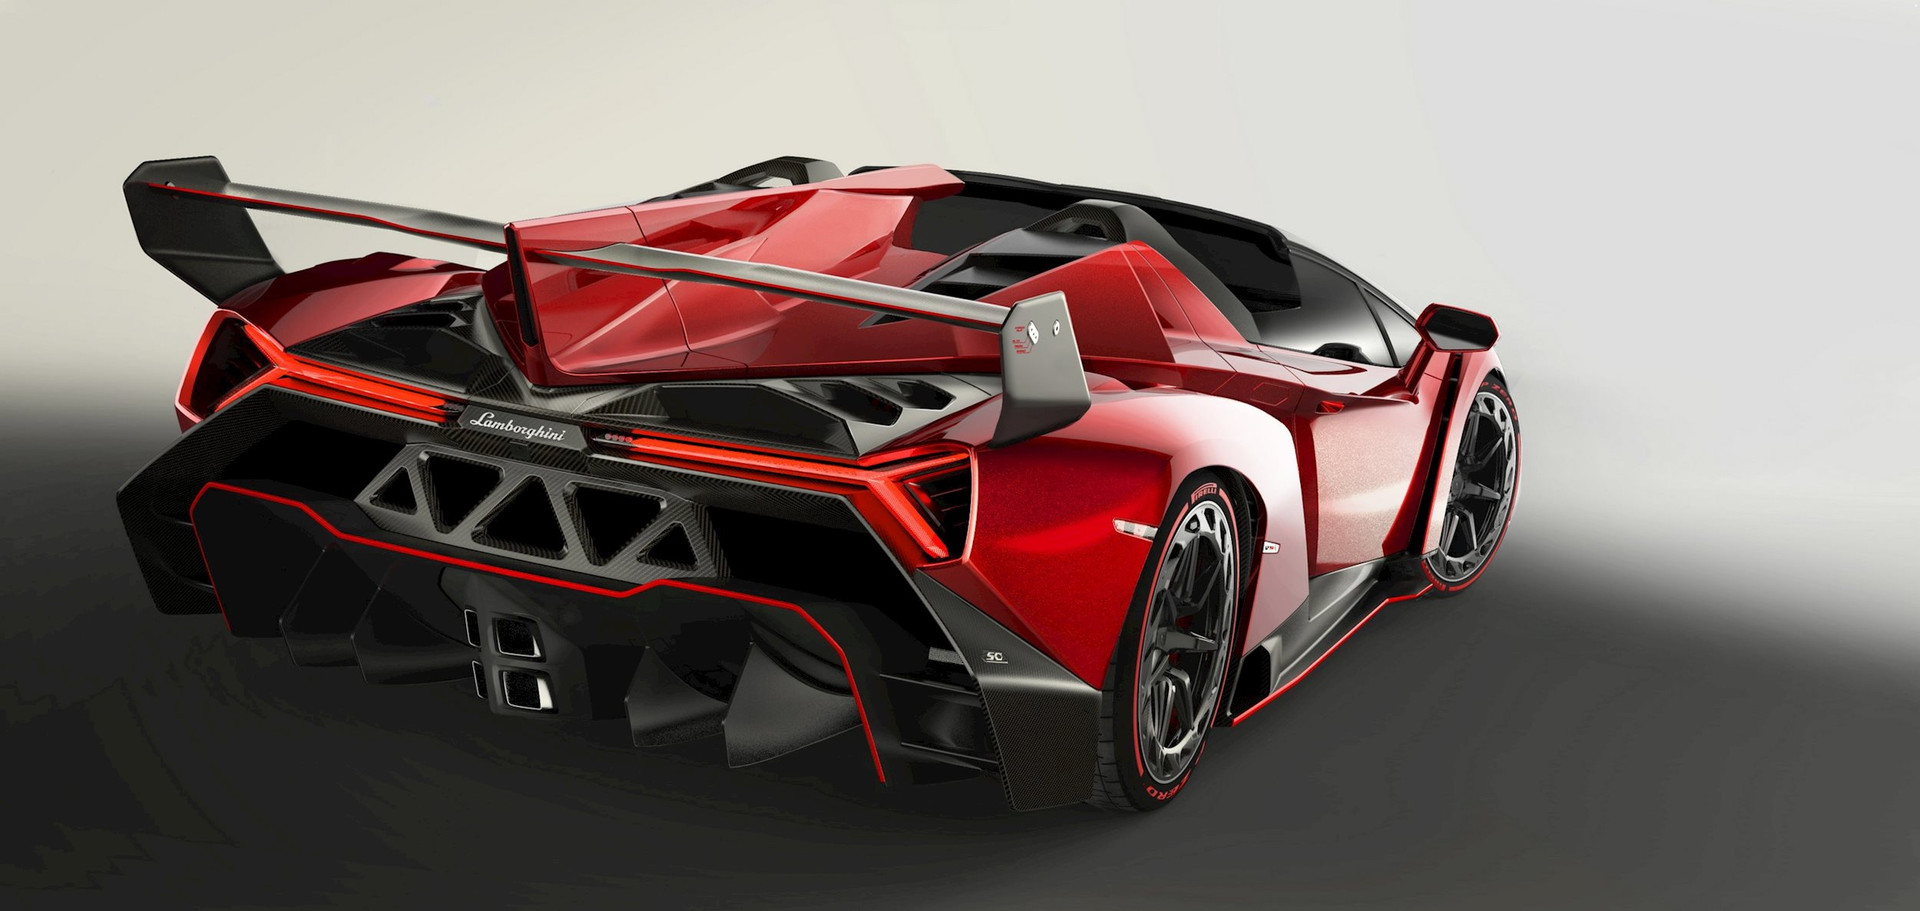 Chiếc Lamborghini cực hiếm có giá bằng 24 chiếc Rolls-Royce Phantom cộng lại: Thiết kế cực chất, xứng tầm &quot;kiệt tác xế hộp&quot; - Ảnh 2.